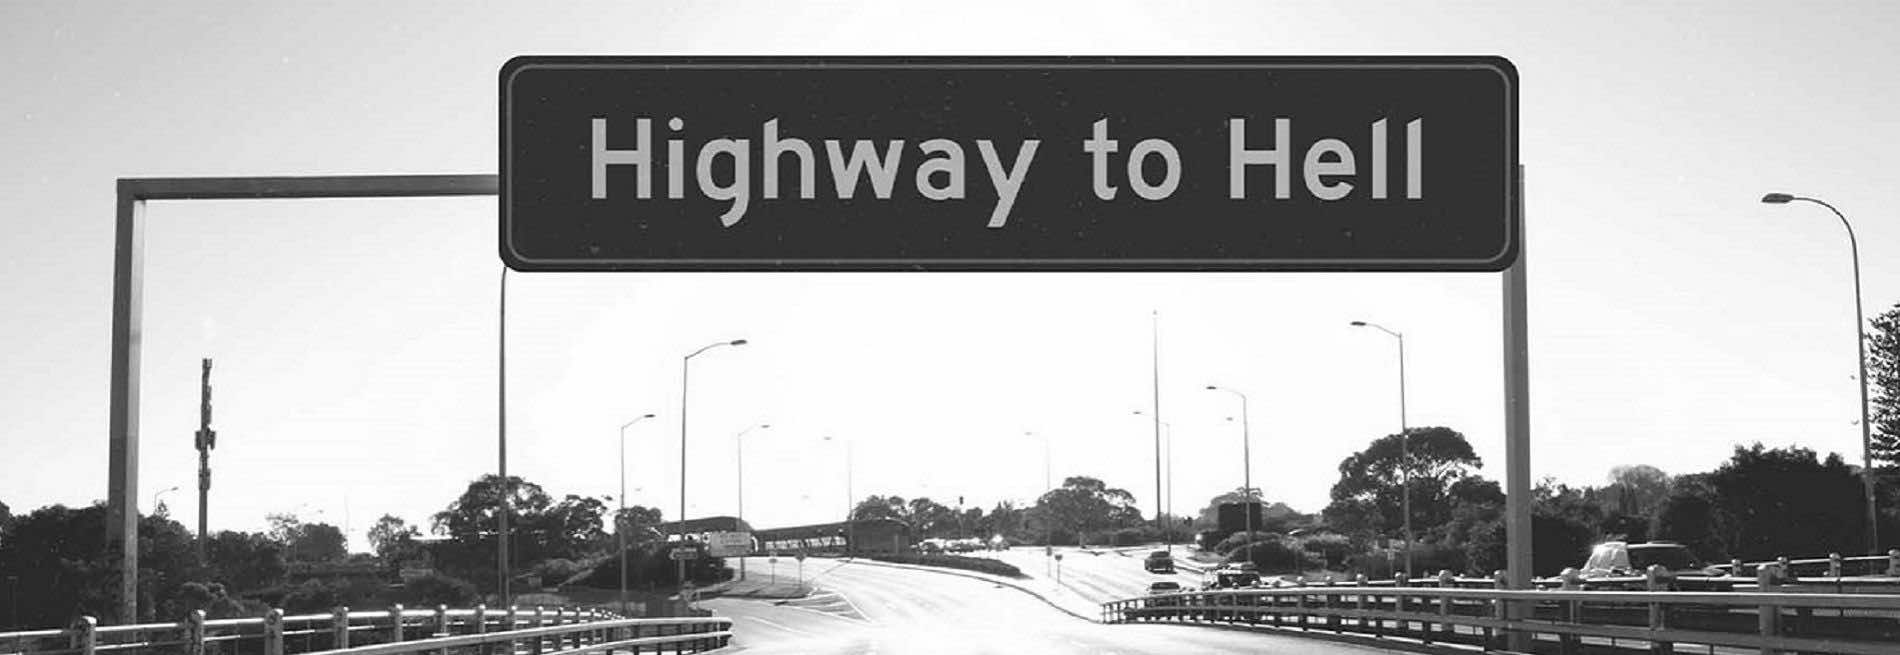 πινακίδα που γράφει Highway to Hell